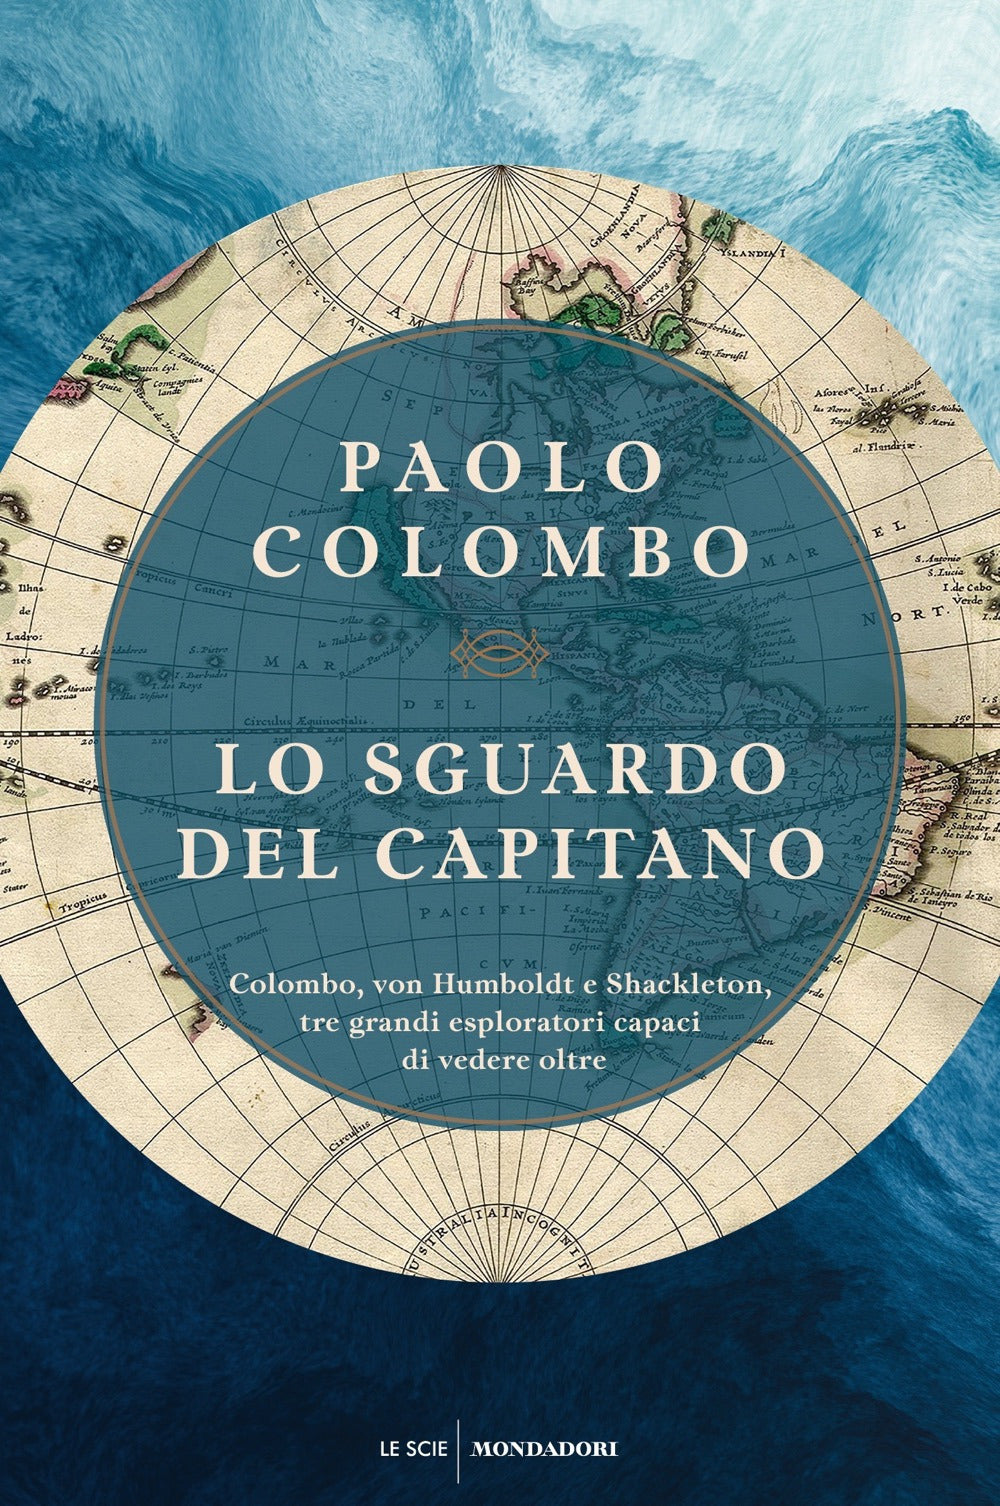 Lo sguardo del capitano. Colombo, von Humboldt e Shackleton, tre grandi esploratori capaci di vedere oltre.